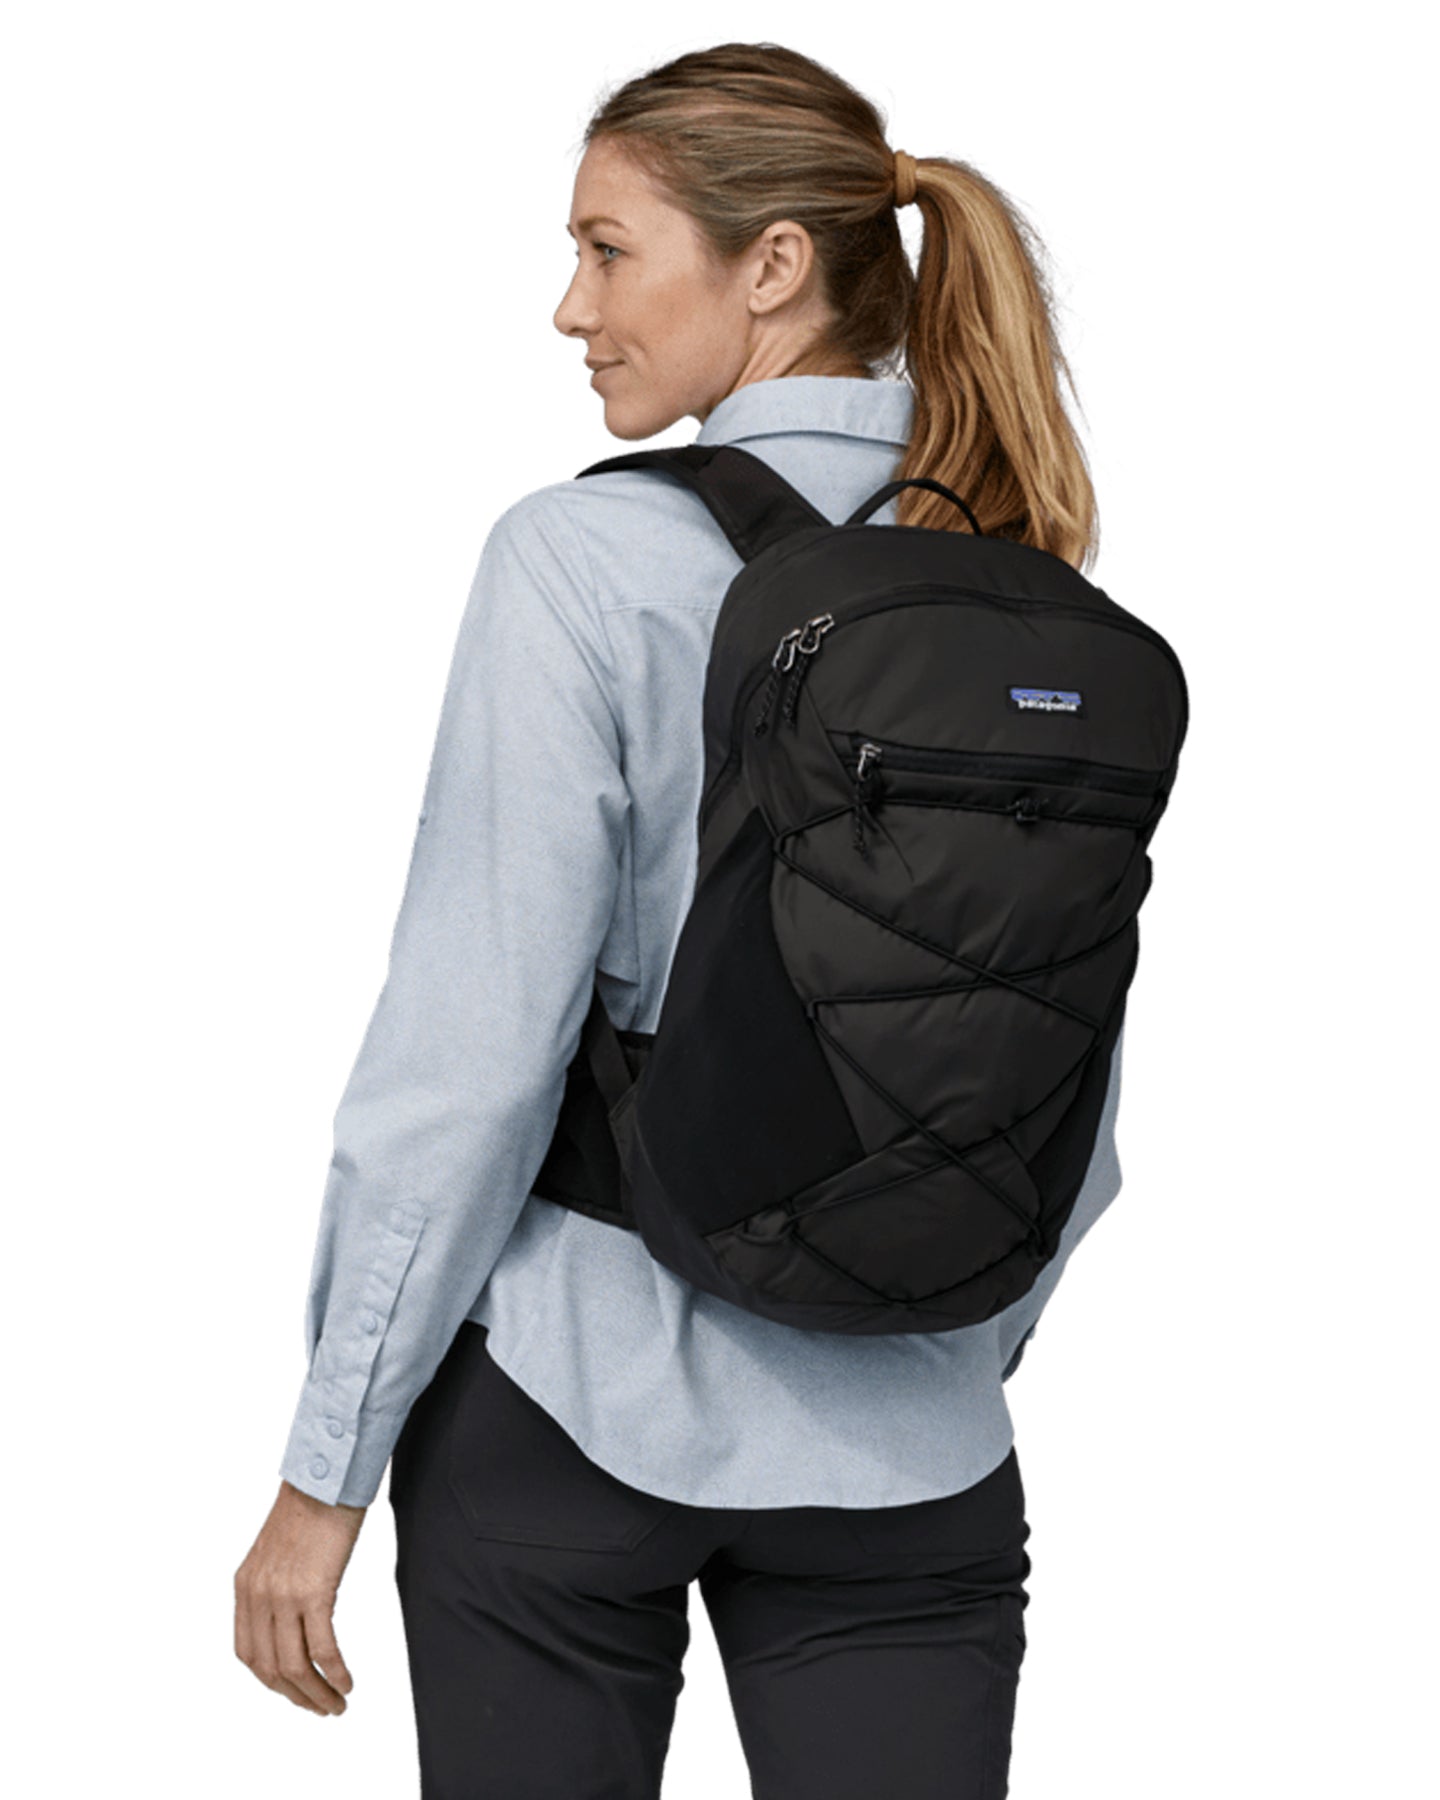 Patagonia Altvia Pack 22L - Black Backpacks - SnowSkiersWarehouse